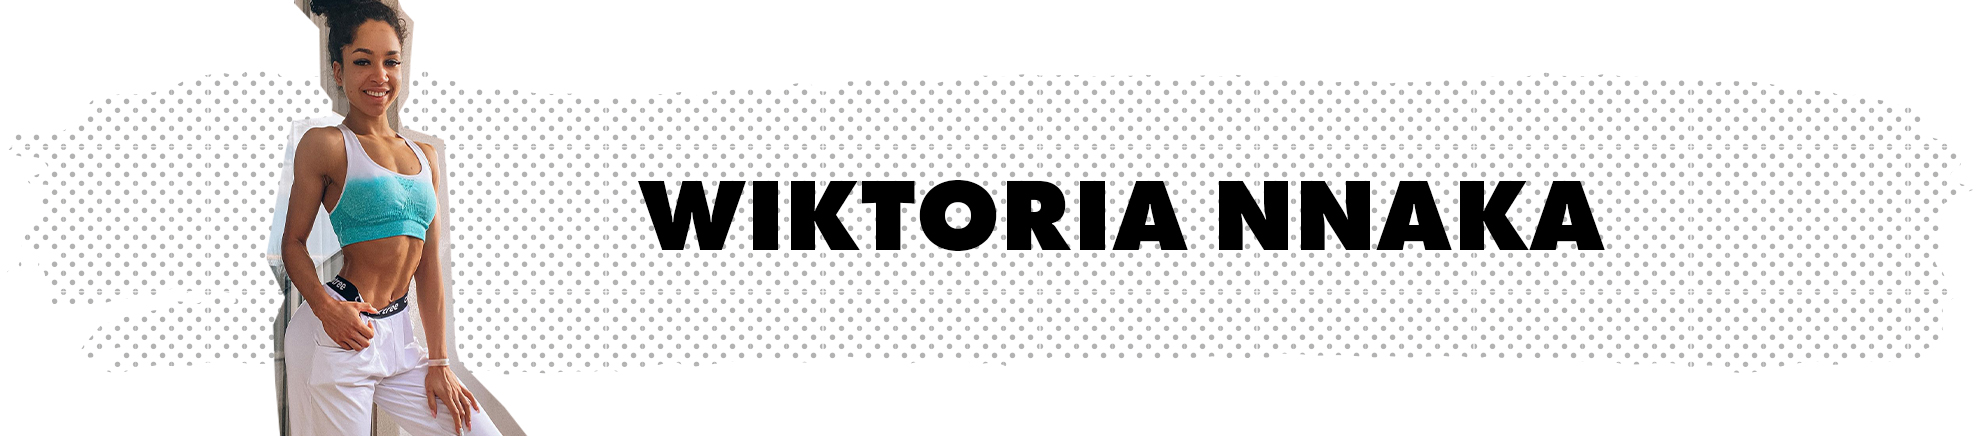 Wiktoria Nnaka - Carpatree brand ambassador